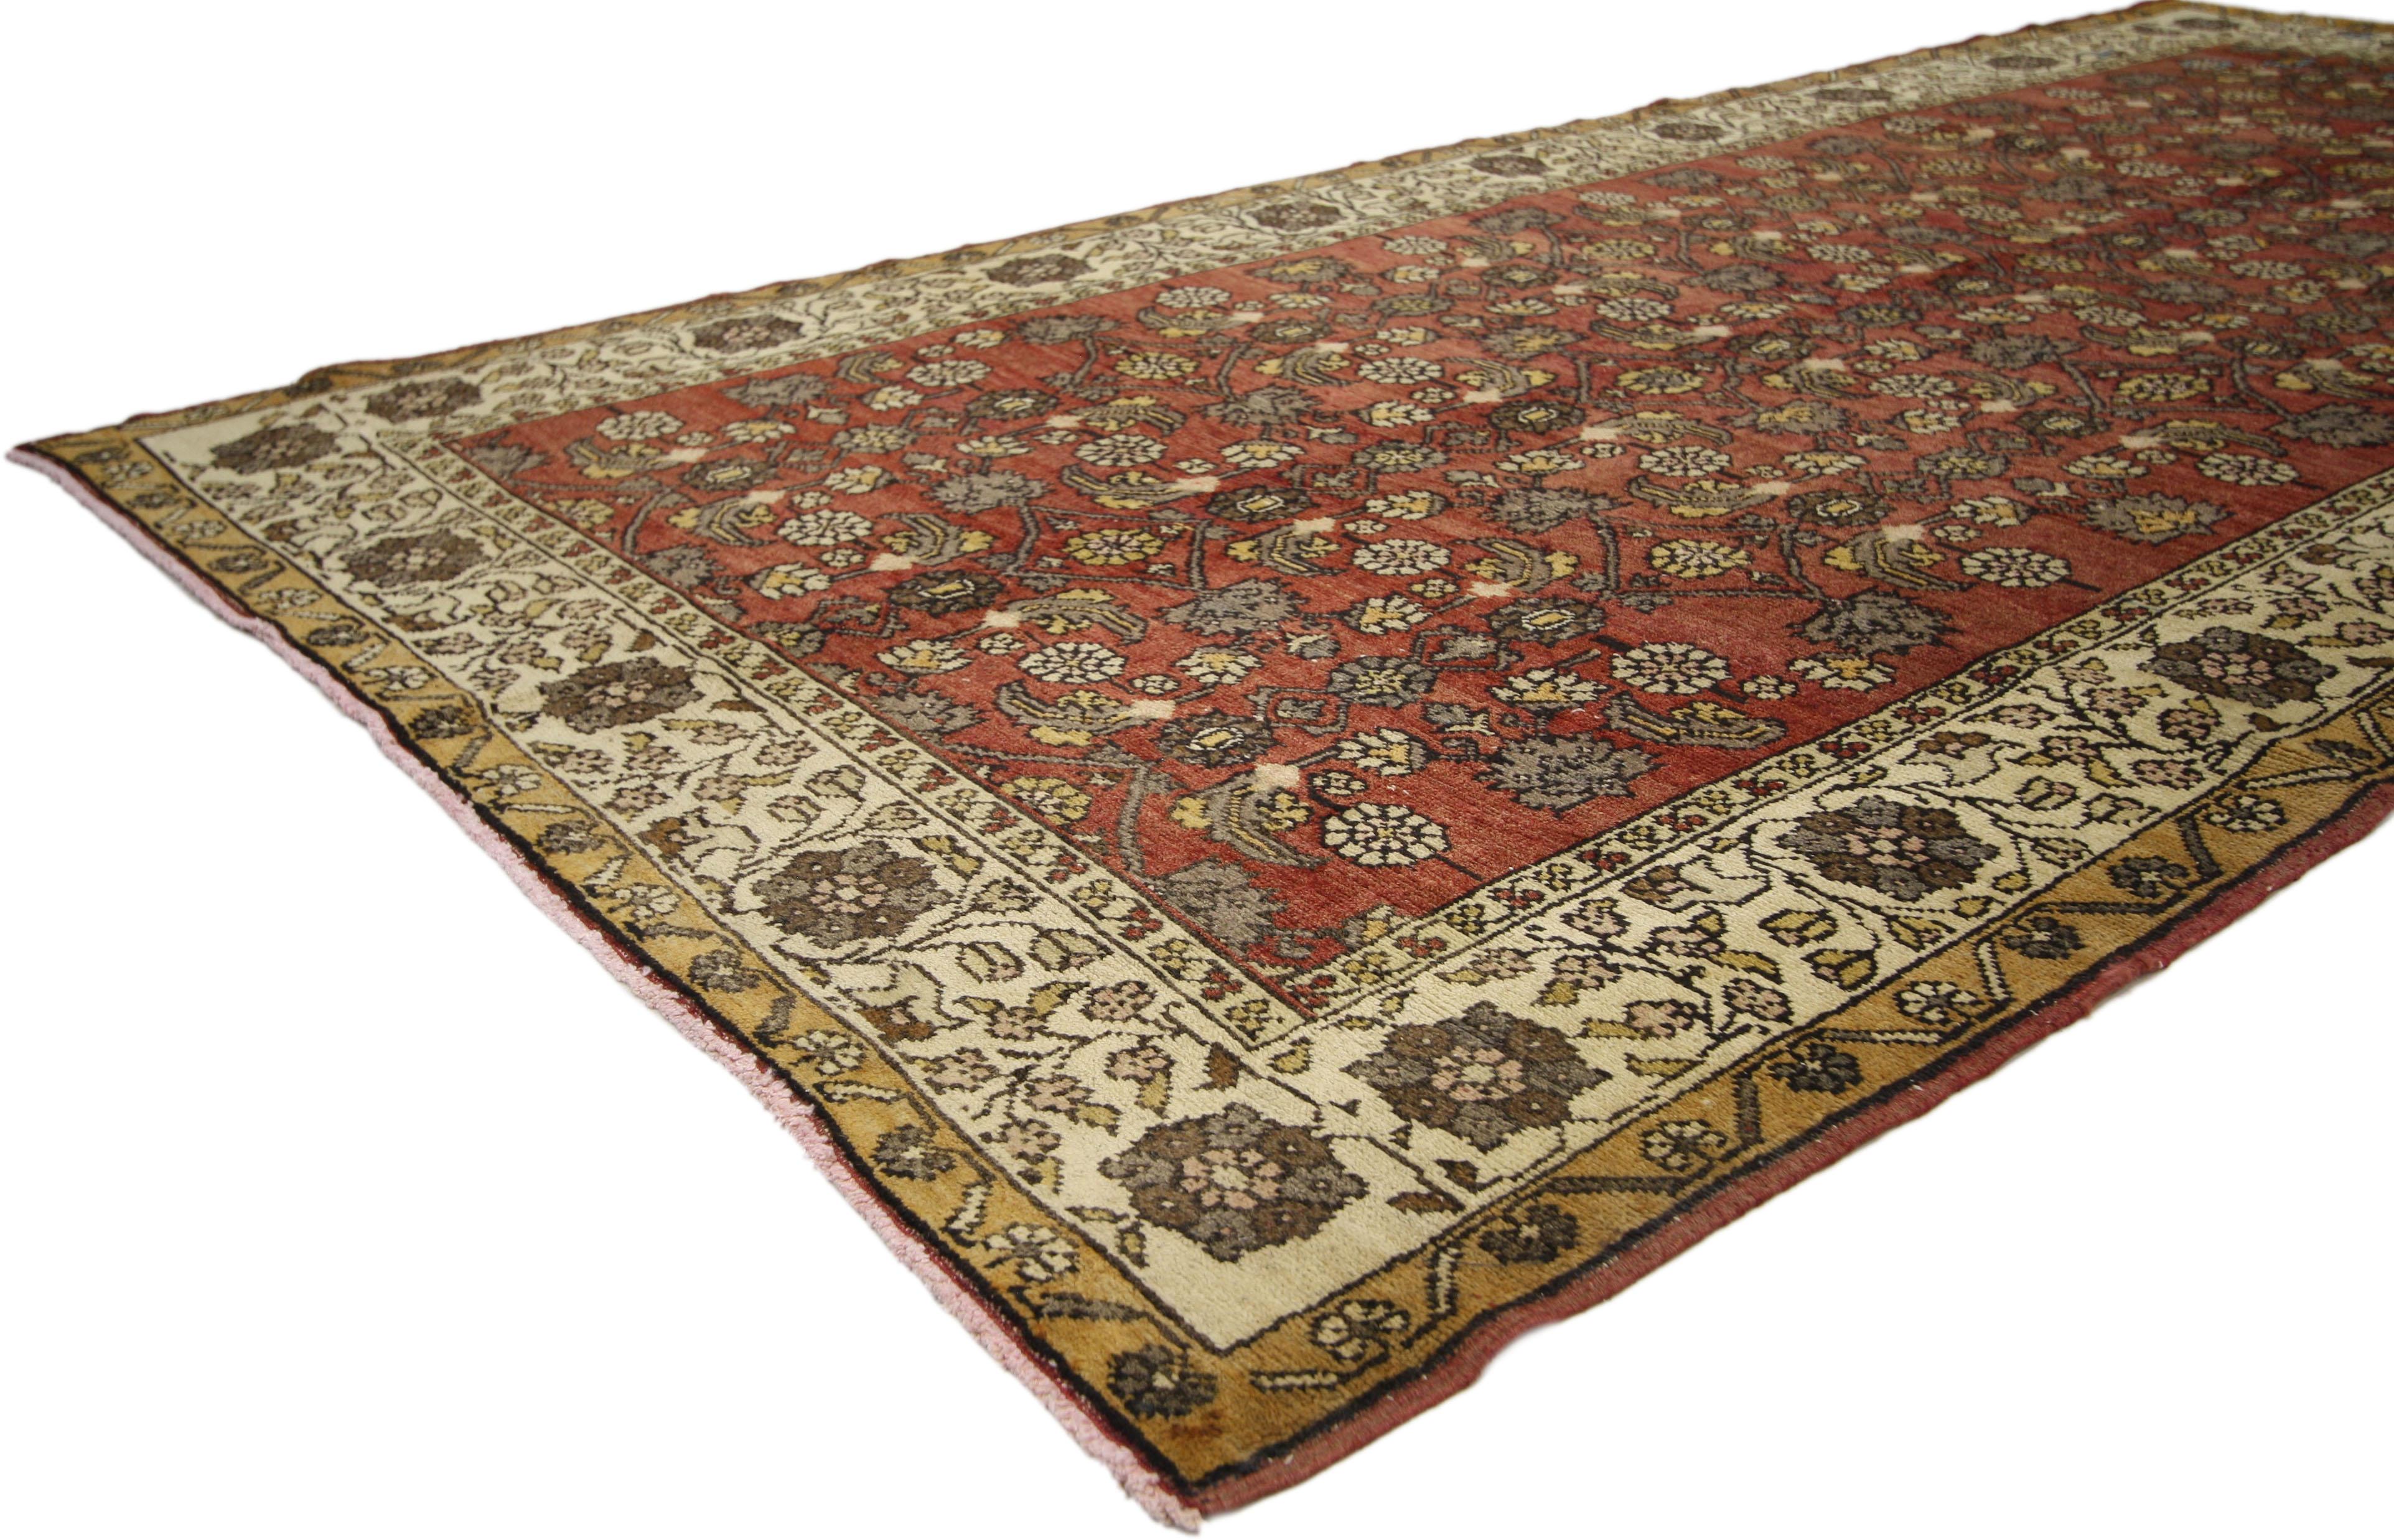 50410, tapis turc vintage Sivas de style moderne et traditionnel. Ce tapis Sivas turc vintage en laine nouée à la main présente un motif Herati élaboré flottant sur un champ rouge abrasé entouré d'une bordure beige composée de fleurs et de palmettes